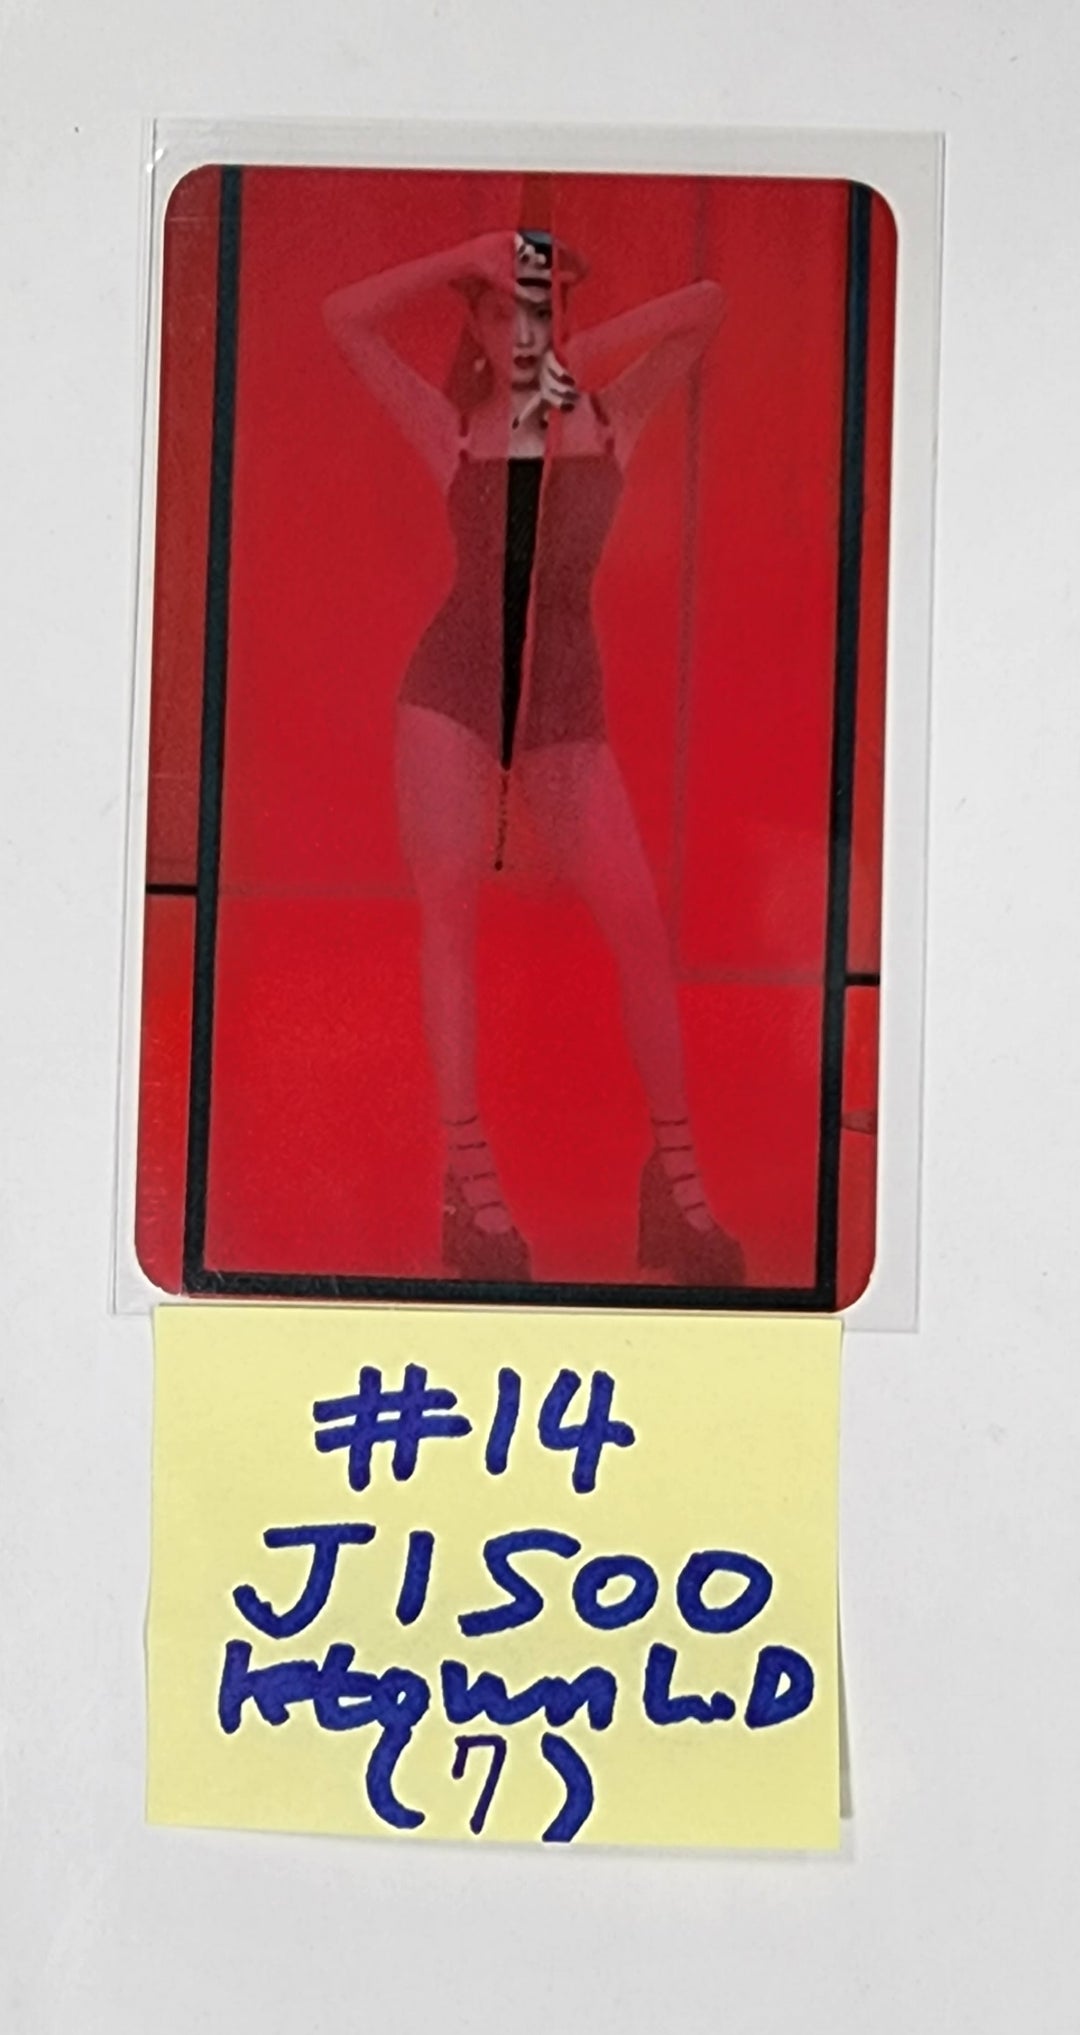 JISOO (Of Black Pink) "ME" 1st Single Album - Ktown4U 抽選イベントフォトカード [INSA,COEX]